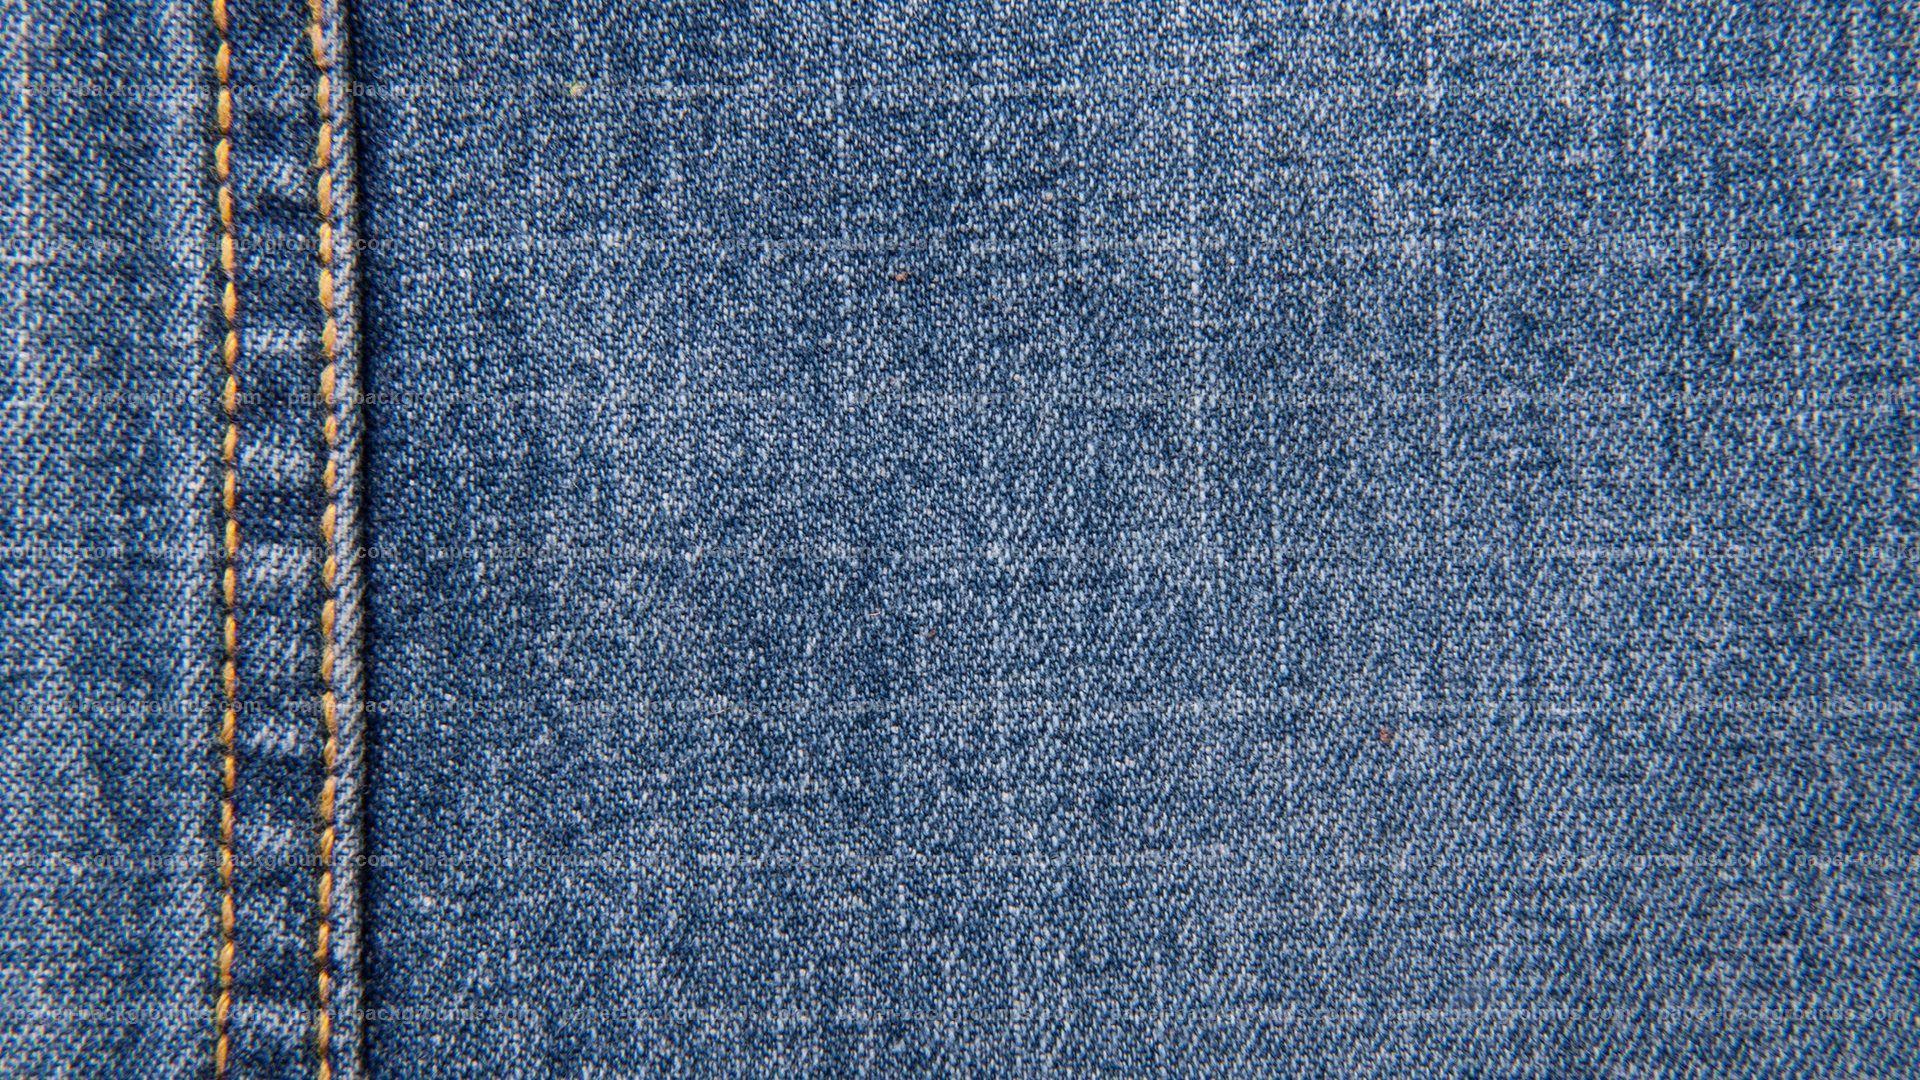 Ausstellung Tagebuch Pflicht jeans wallpaper Warenhaus Harmonisch Tau